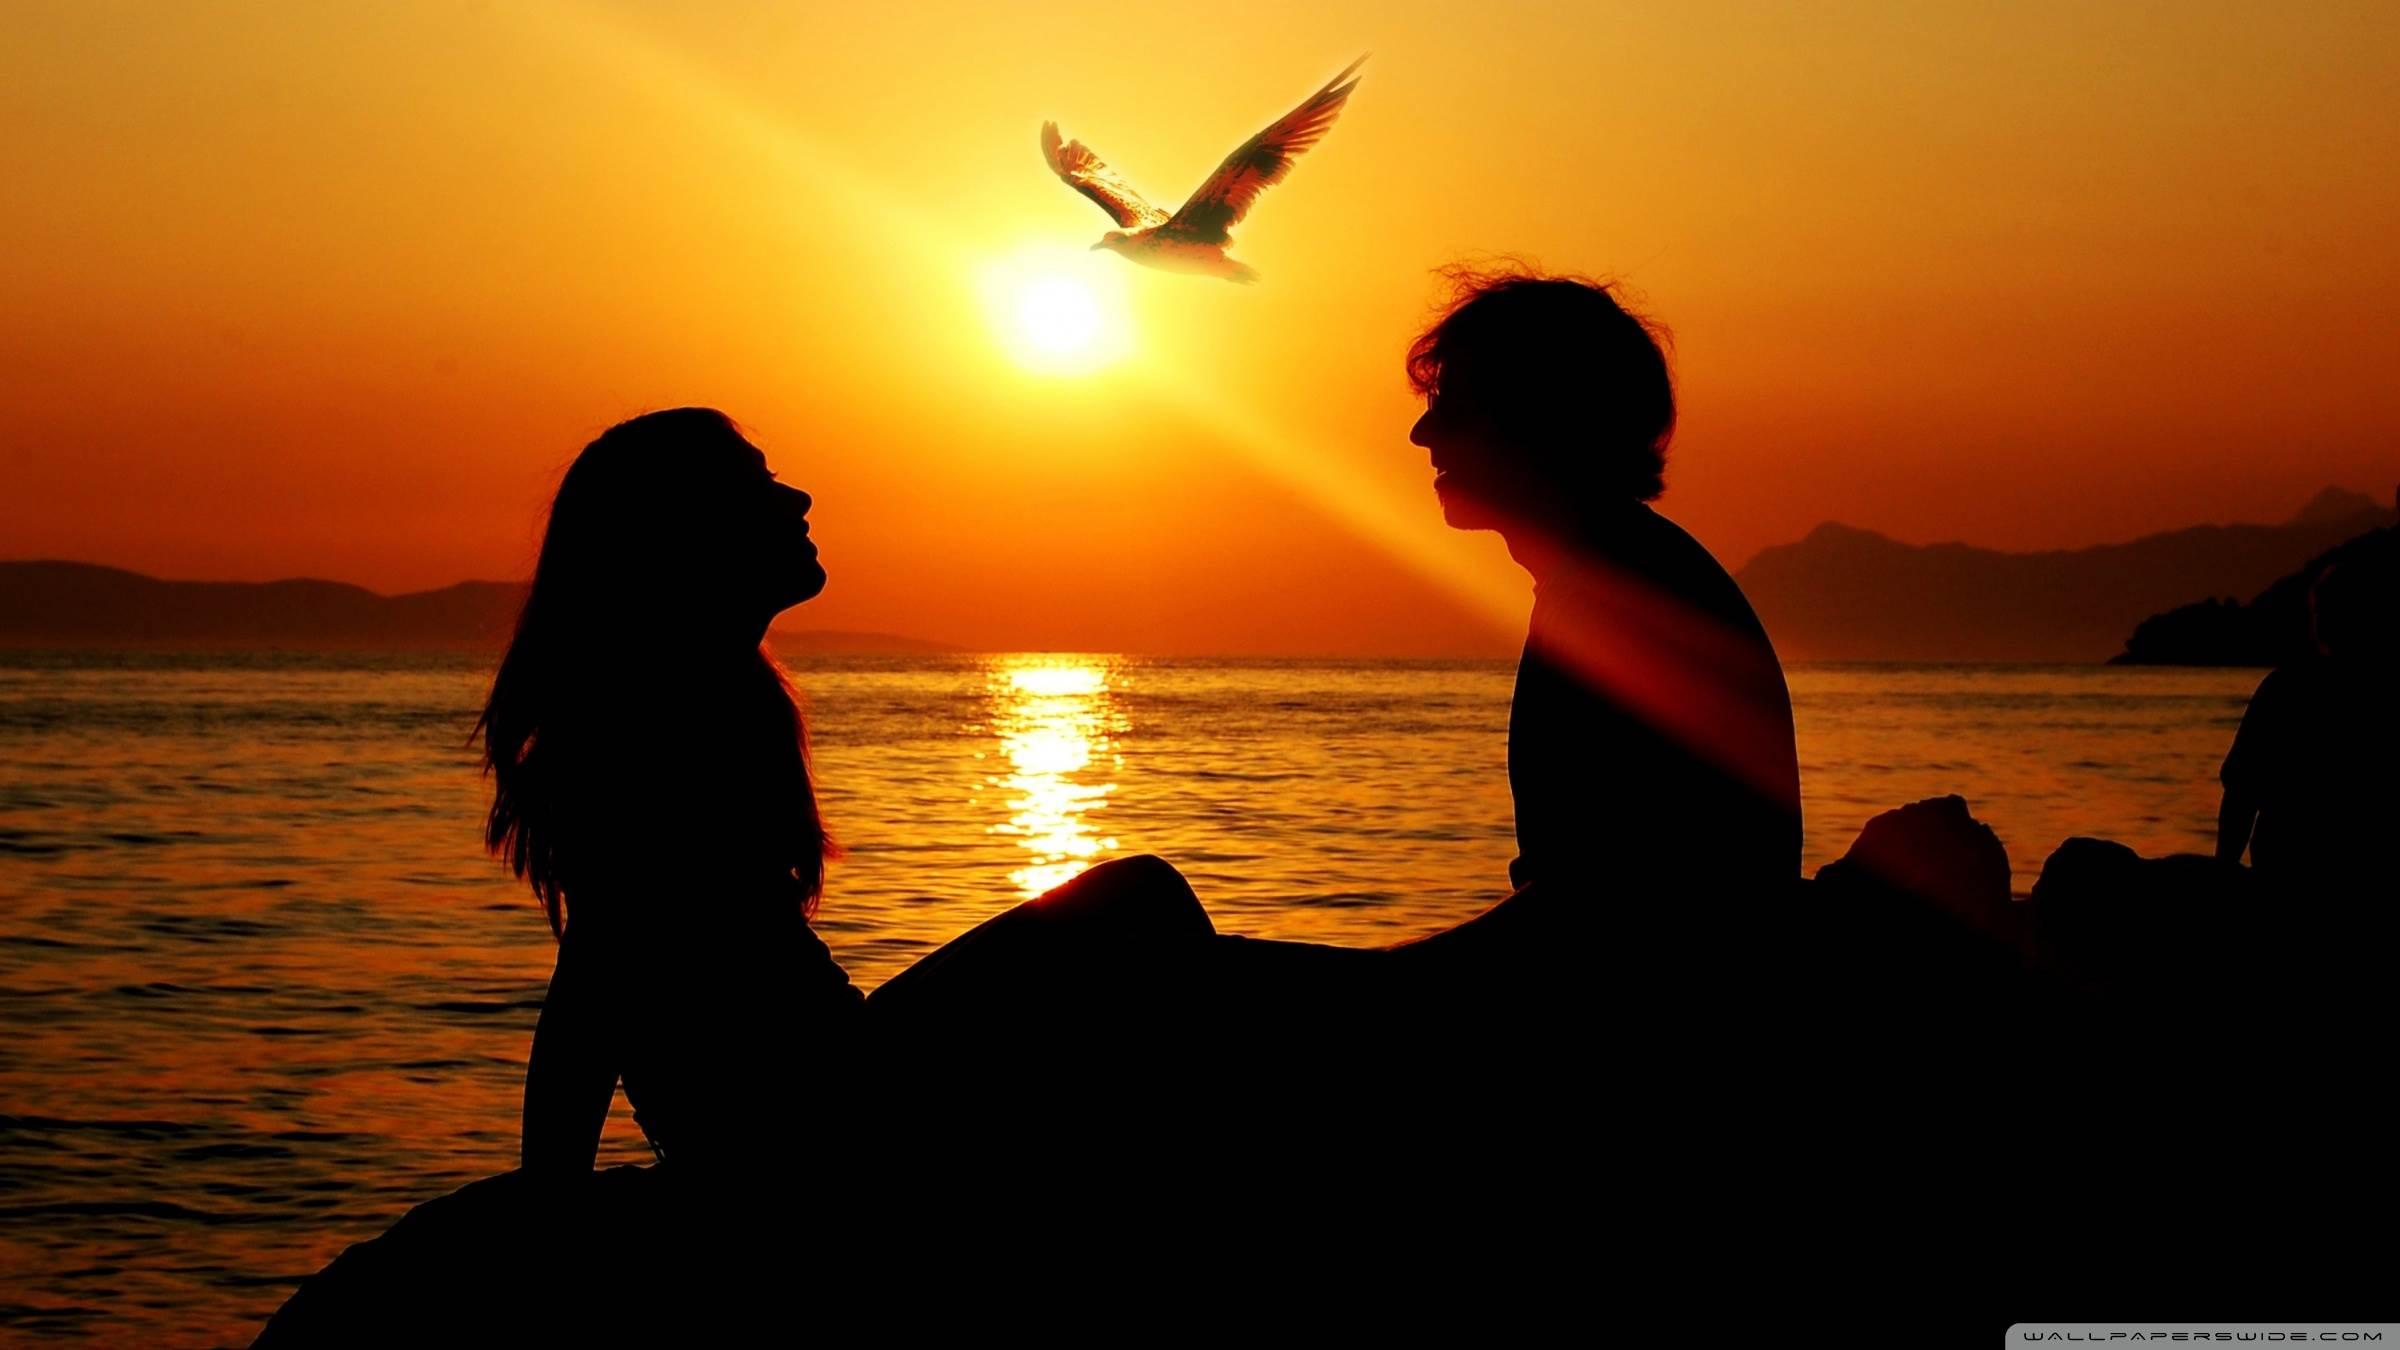 Romantic Couple Sunset HD desktop wallpaper, Widescreen, High Definition, Fullscreen, Mobile